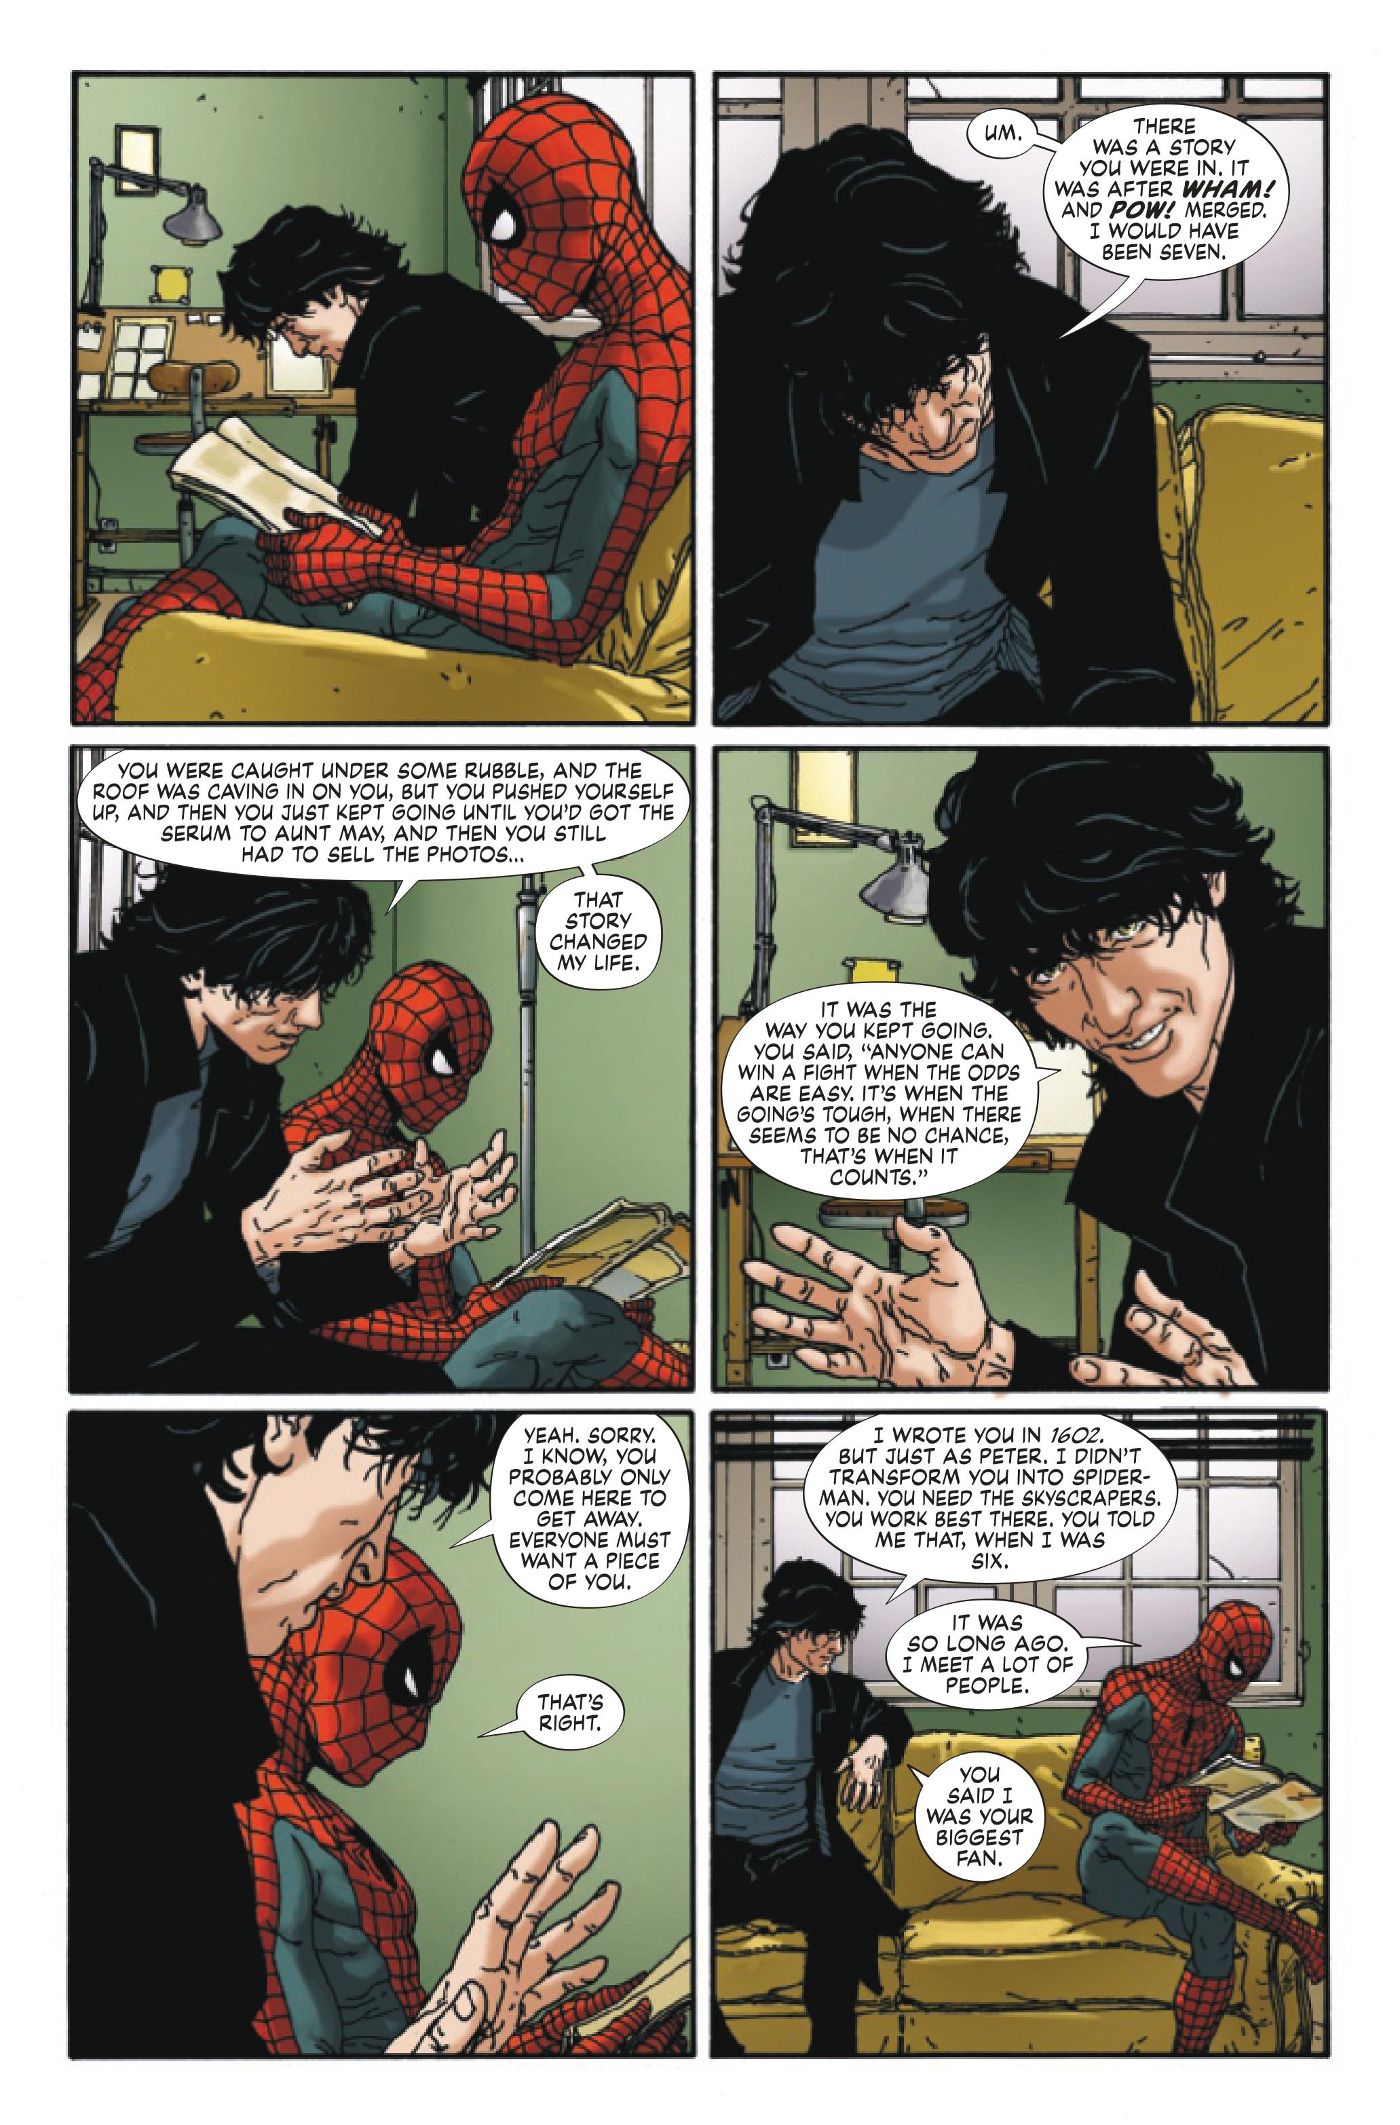 Spider-Man-Neil-Gaiman-Amazing-Fantasy